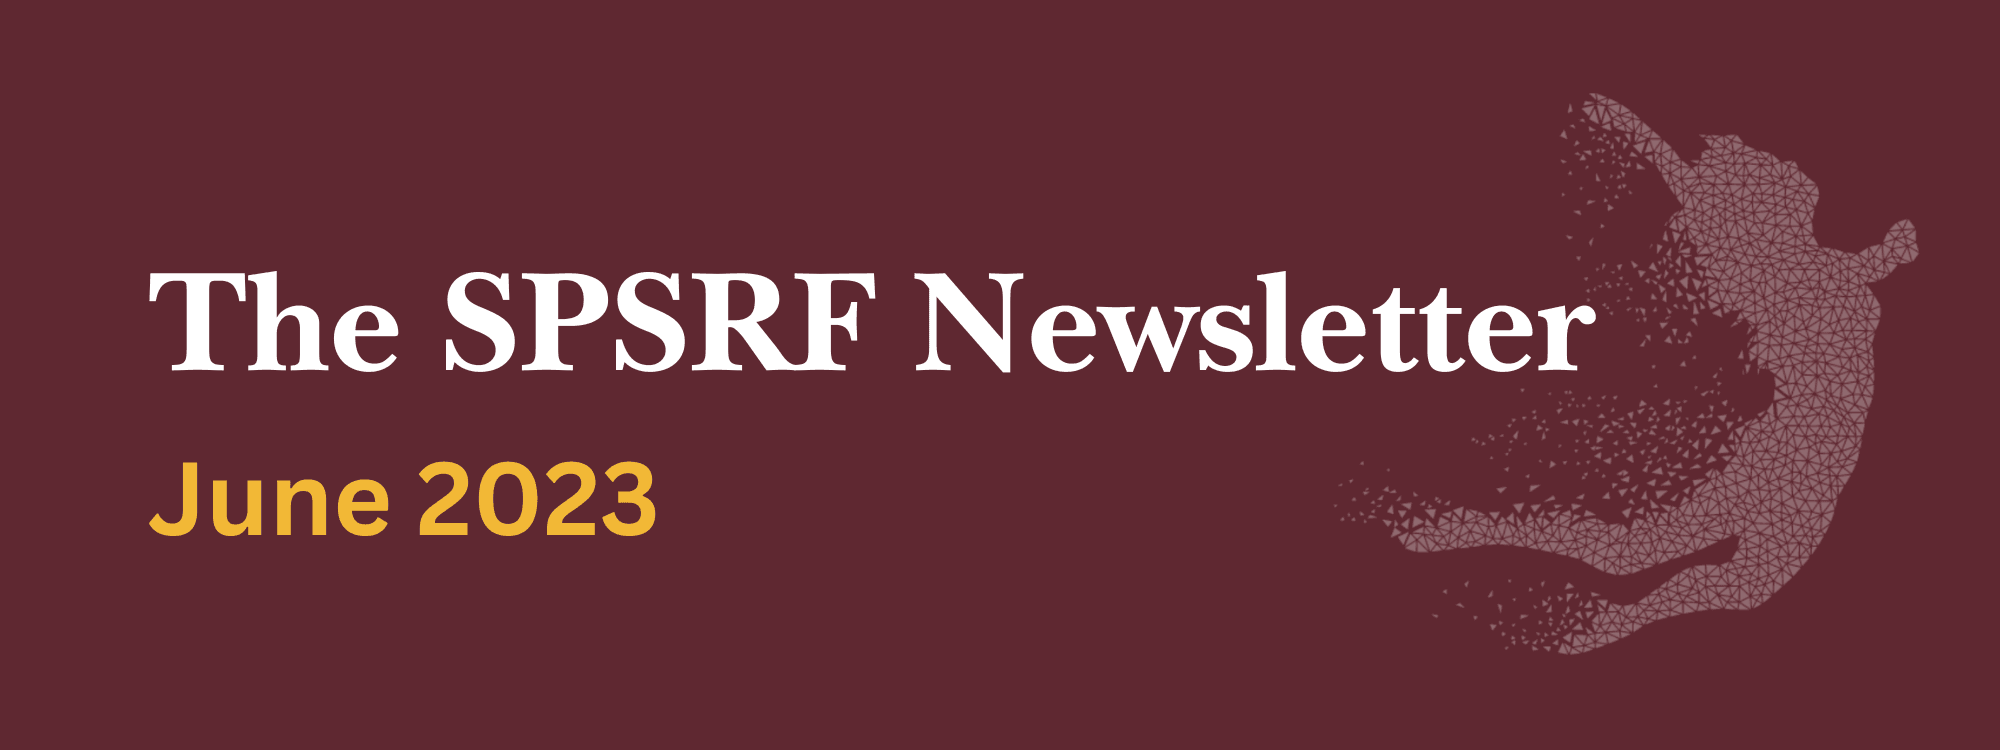 The SPSRF Newsletter June 2023